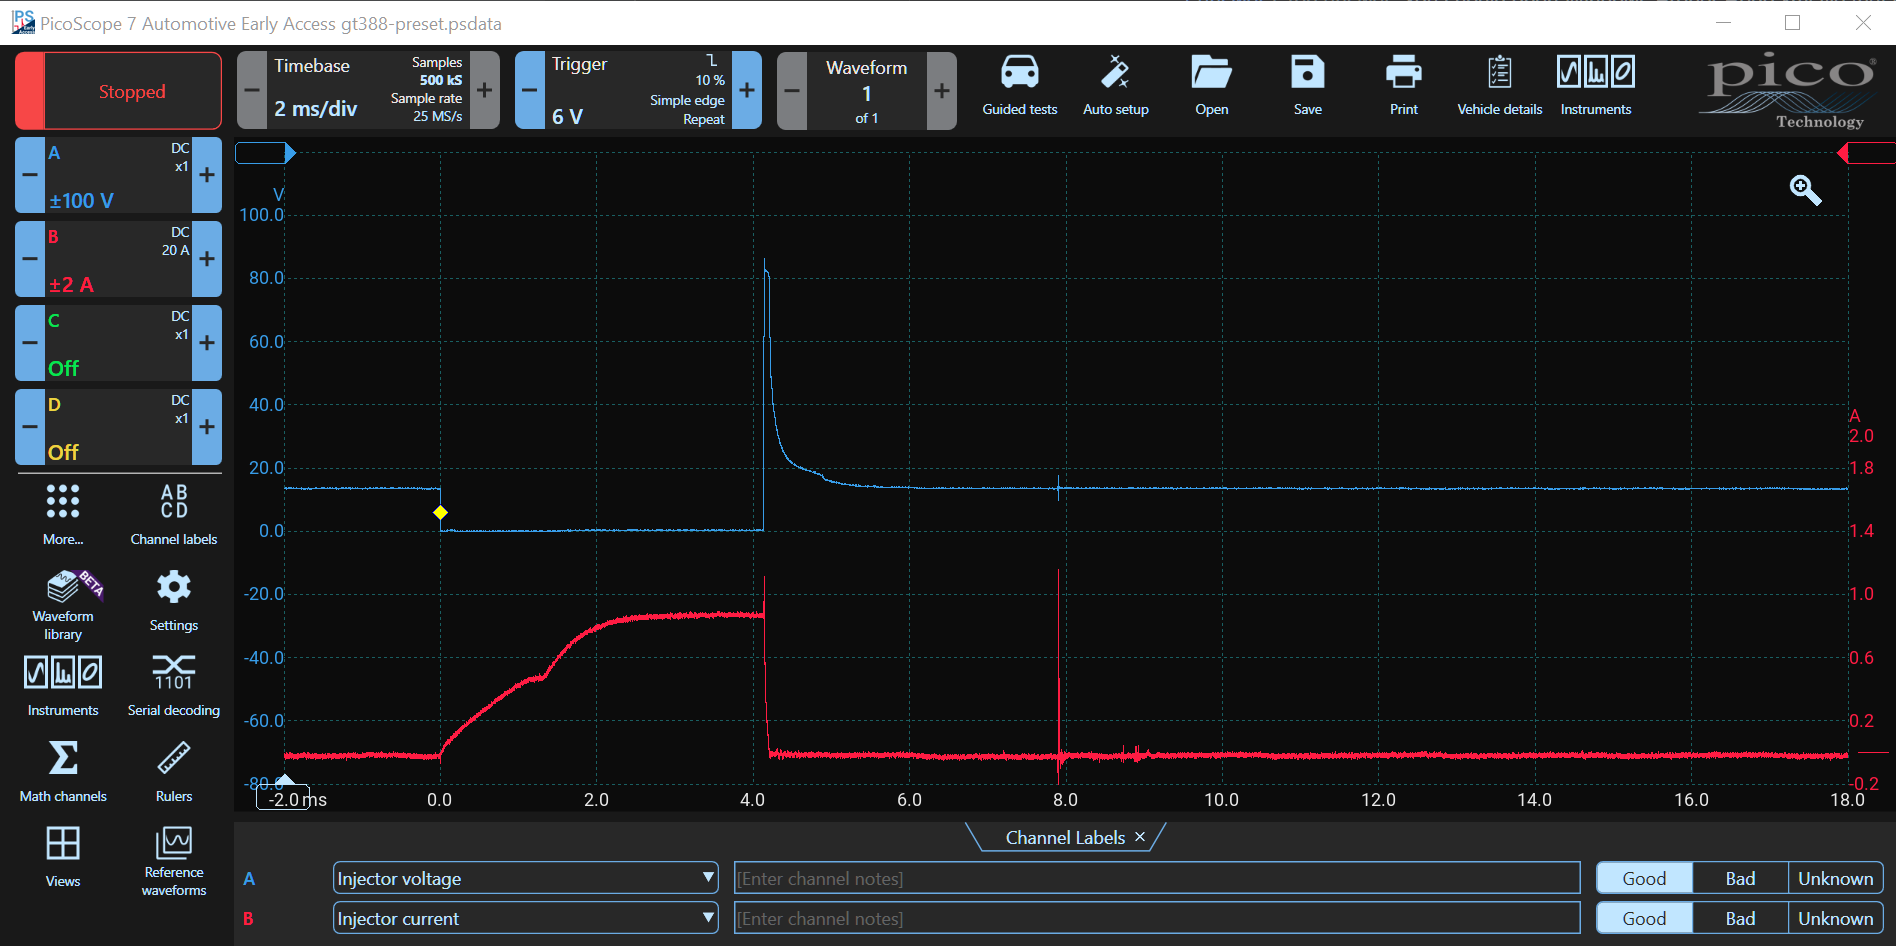 Test 4 Injector Current and Voltage Waveform